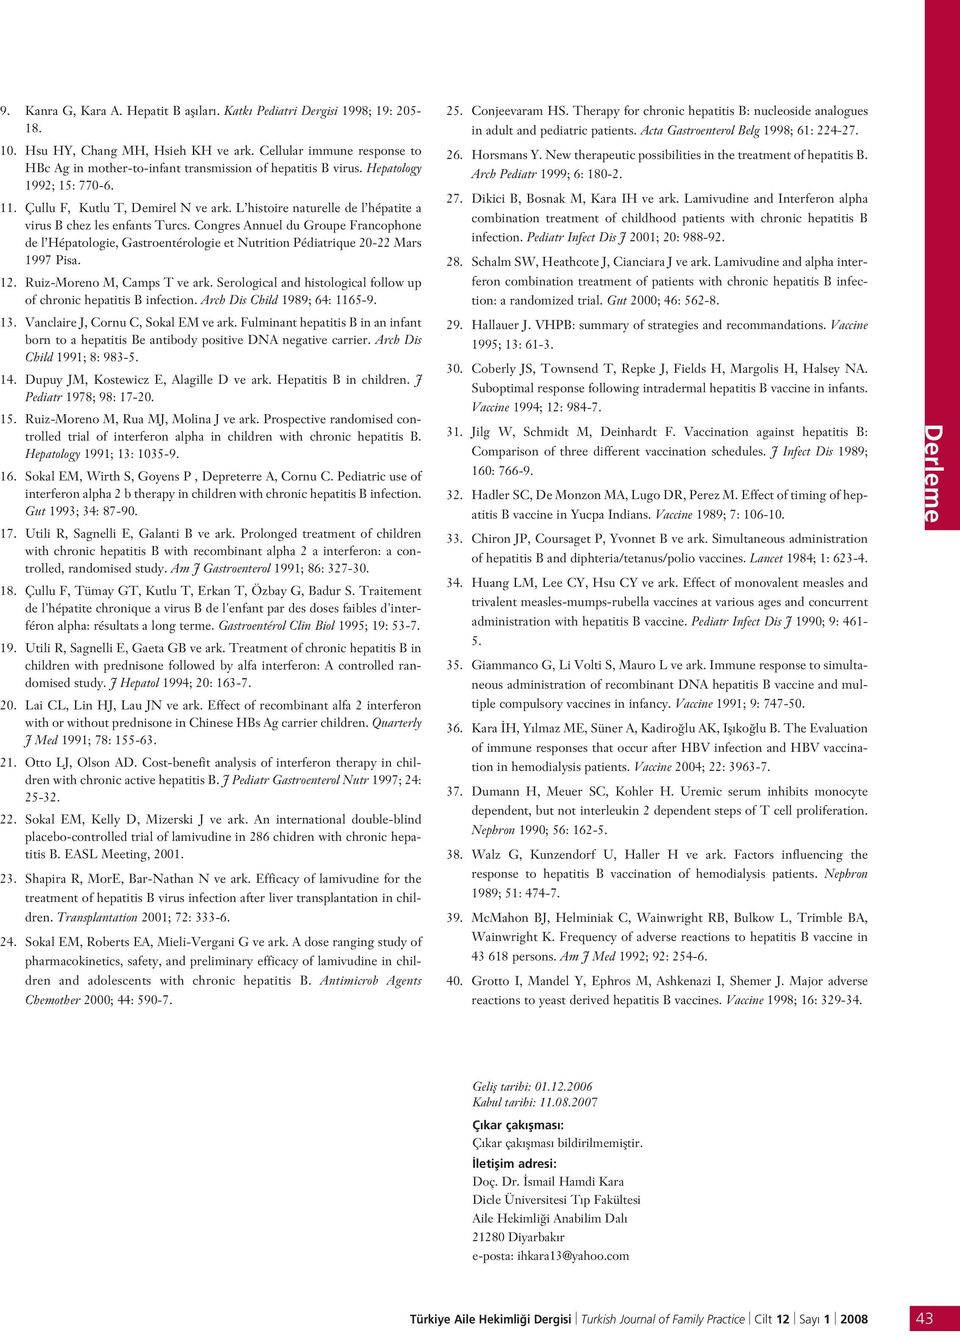 L histoire naturelle de l hépatite a virus B chez les enfants Turcs. Congres Annuel du Groupe Francophone de l Hépatologie, Gastroentérologie et Nutrition Pédiatrique 20-22 Mars 1997 Pisa. 12.